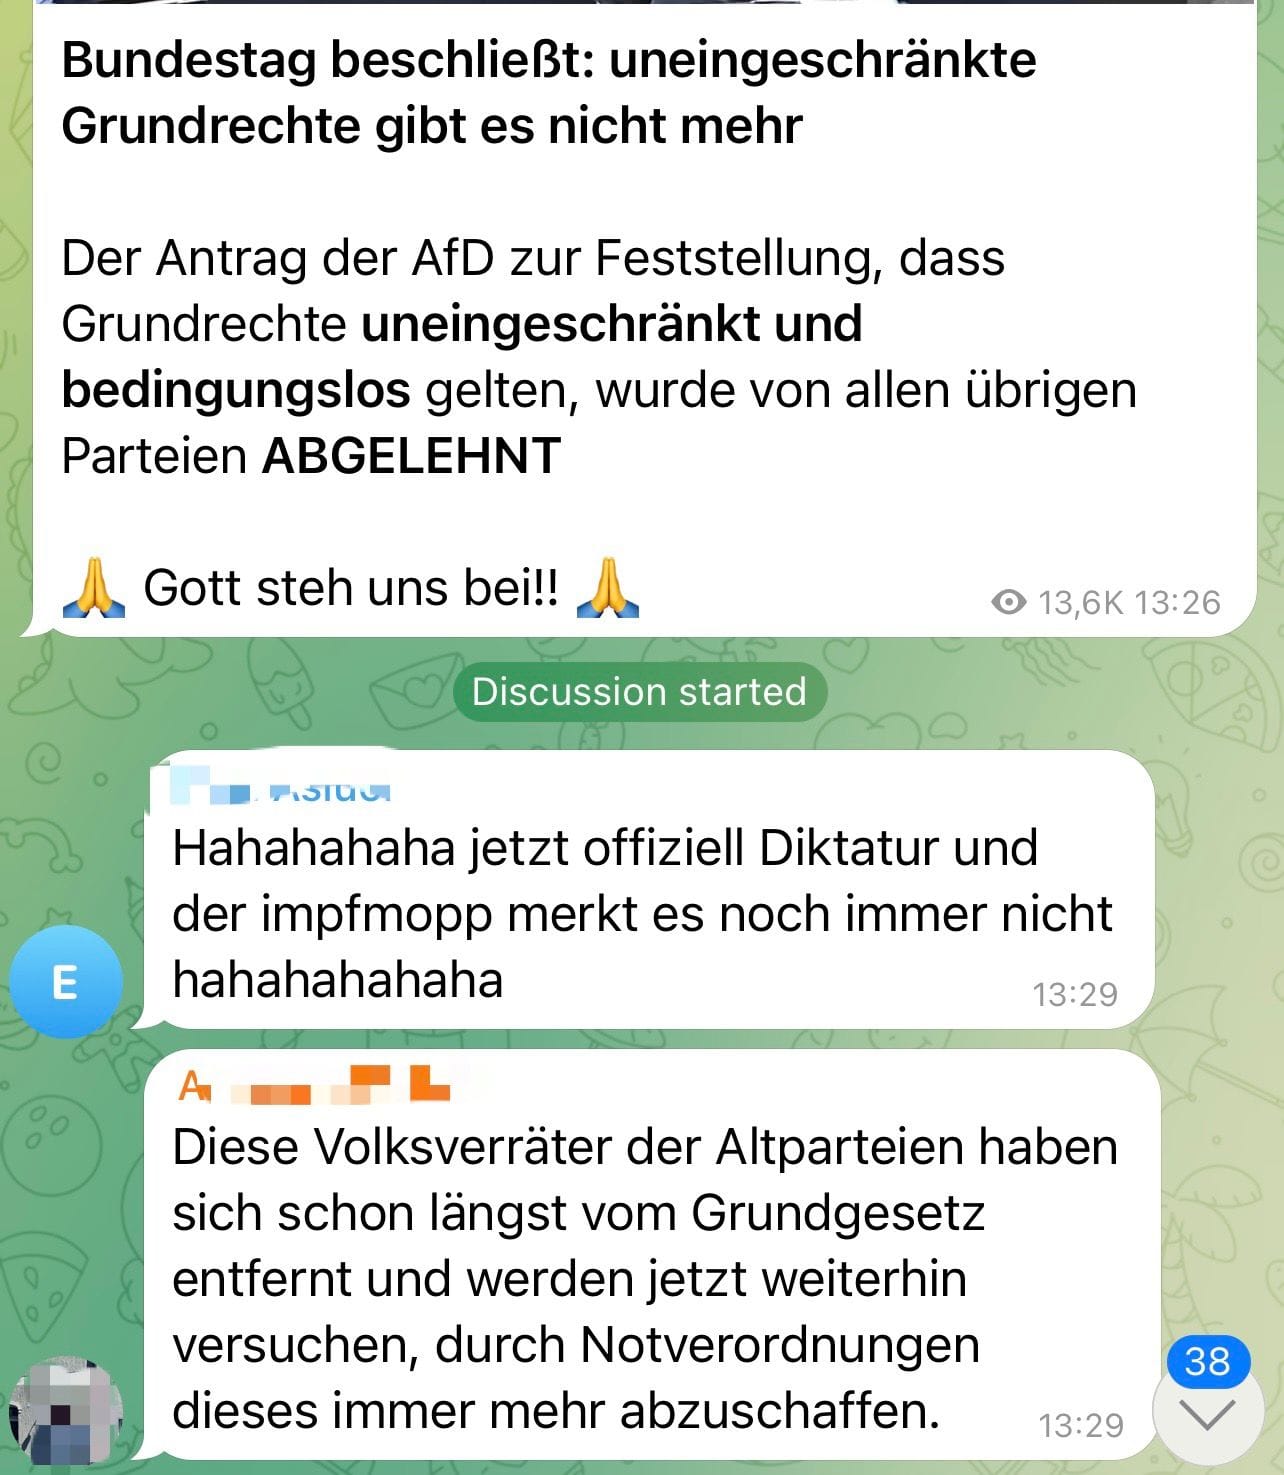 Schnell findet sich der Telegram-Nutzer in Blasen wieder, in denen behauptet wird, man lebe in Deutschland in einer Diktatur. Auch wird dort mit Begriffen wie "Volksverräter" um sich geworfen.